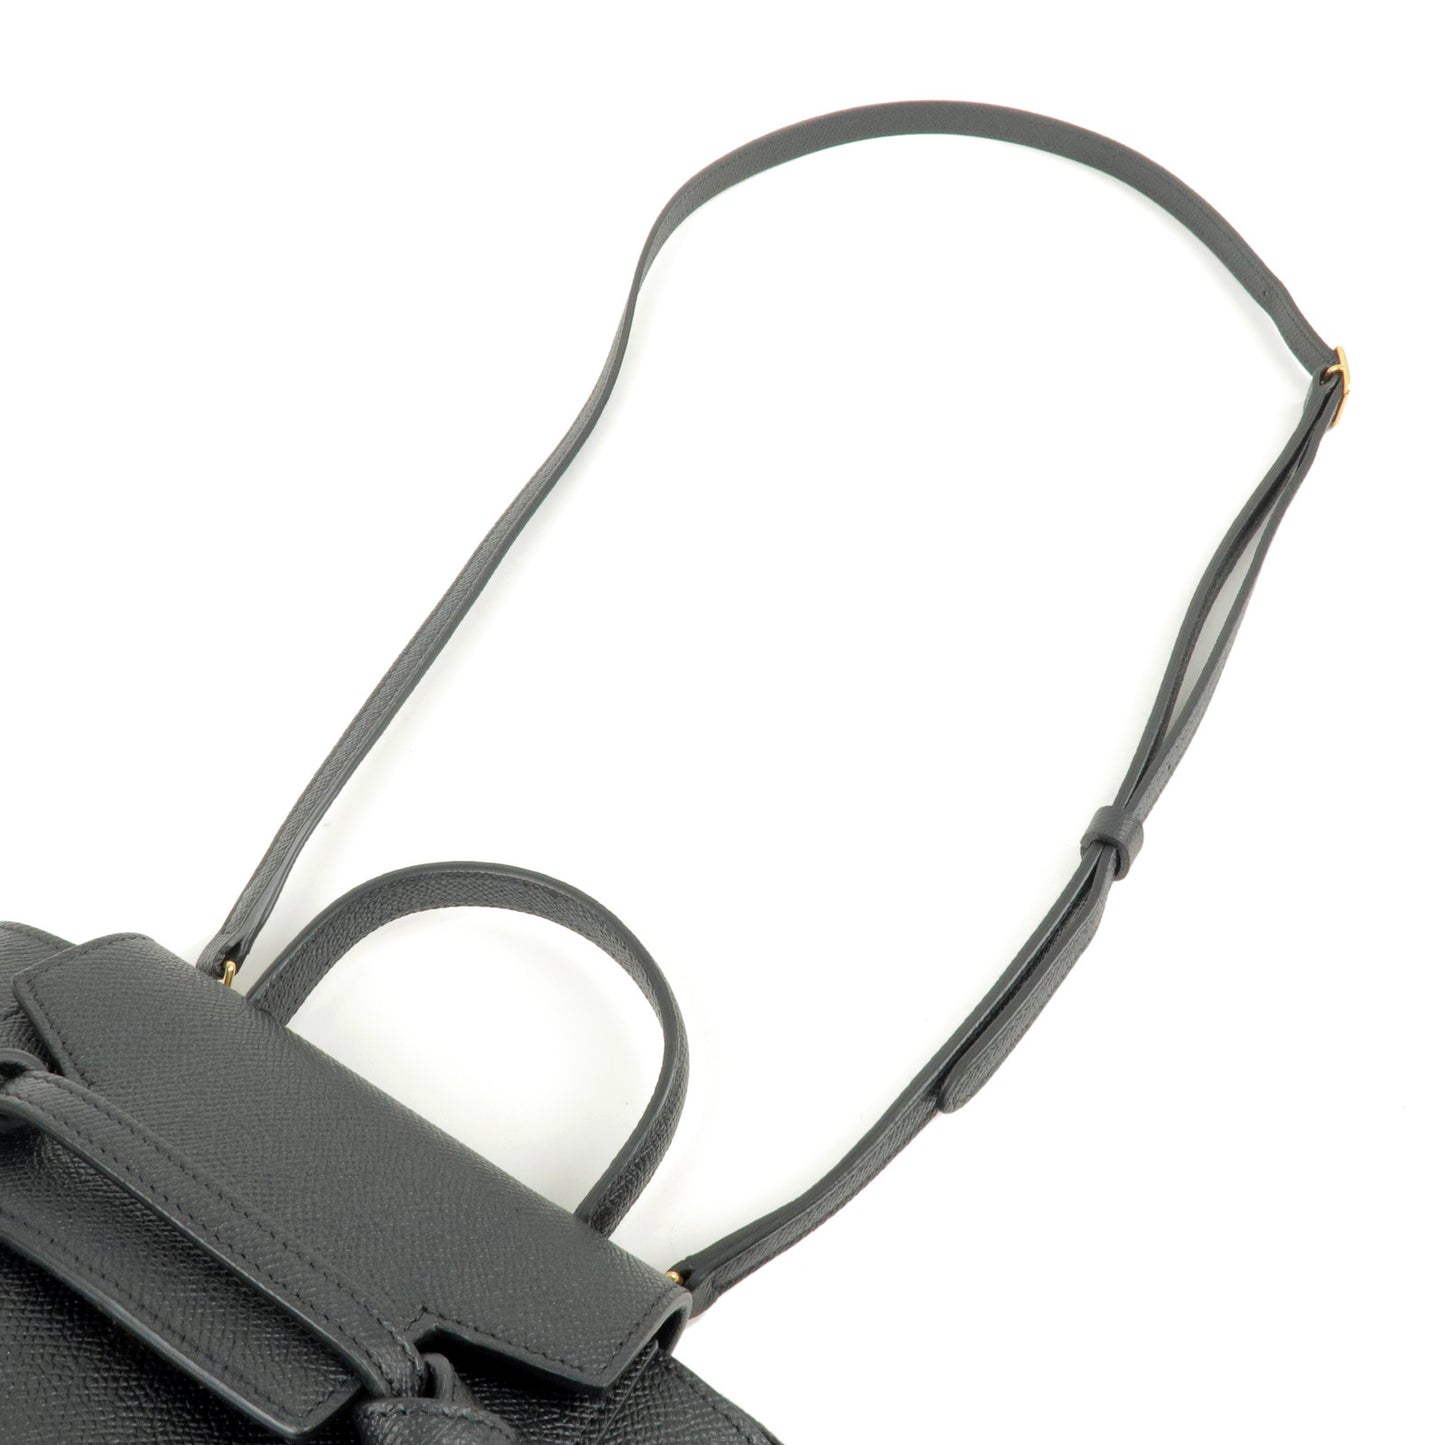 CELINE Pico Leather Belt Bag 2Way Bag Hand Bag Black 194263